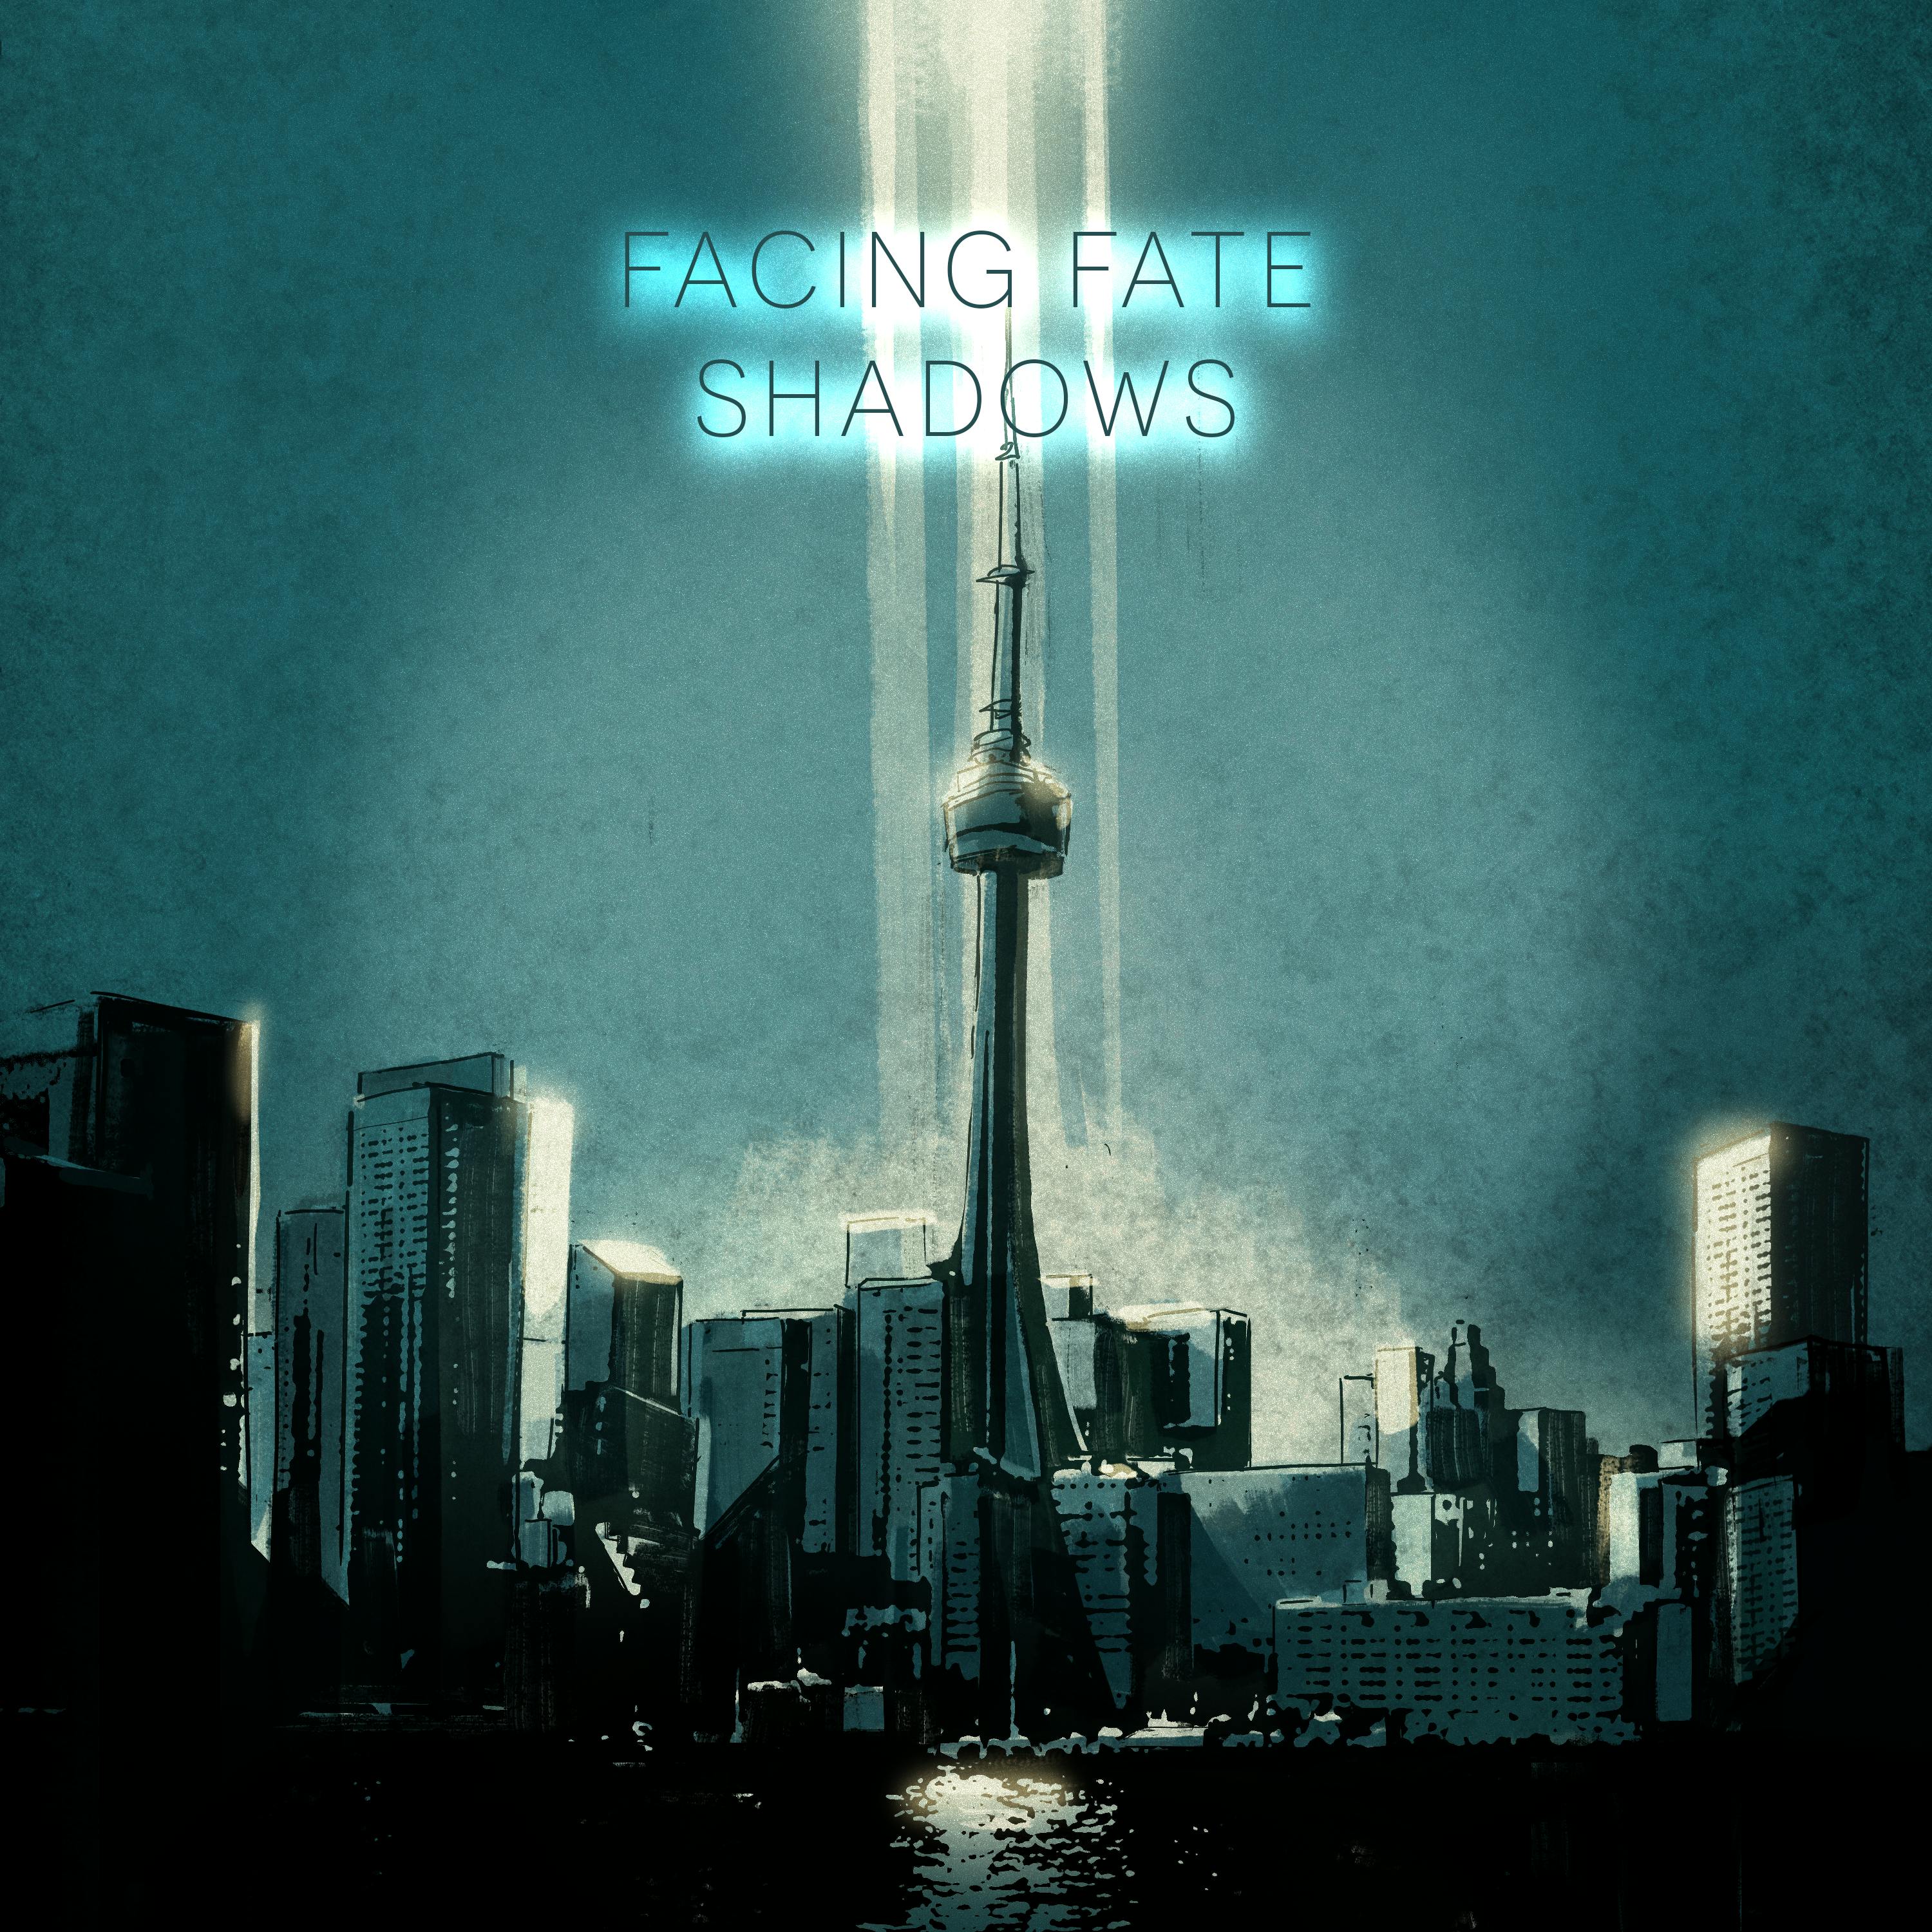 Shadows; Episode 03 - Fear